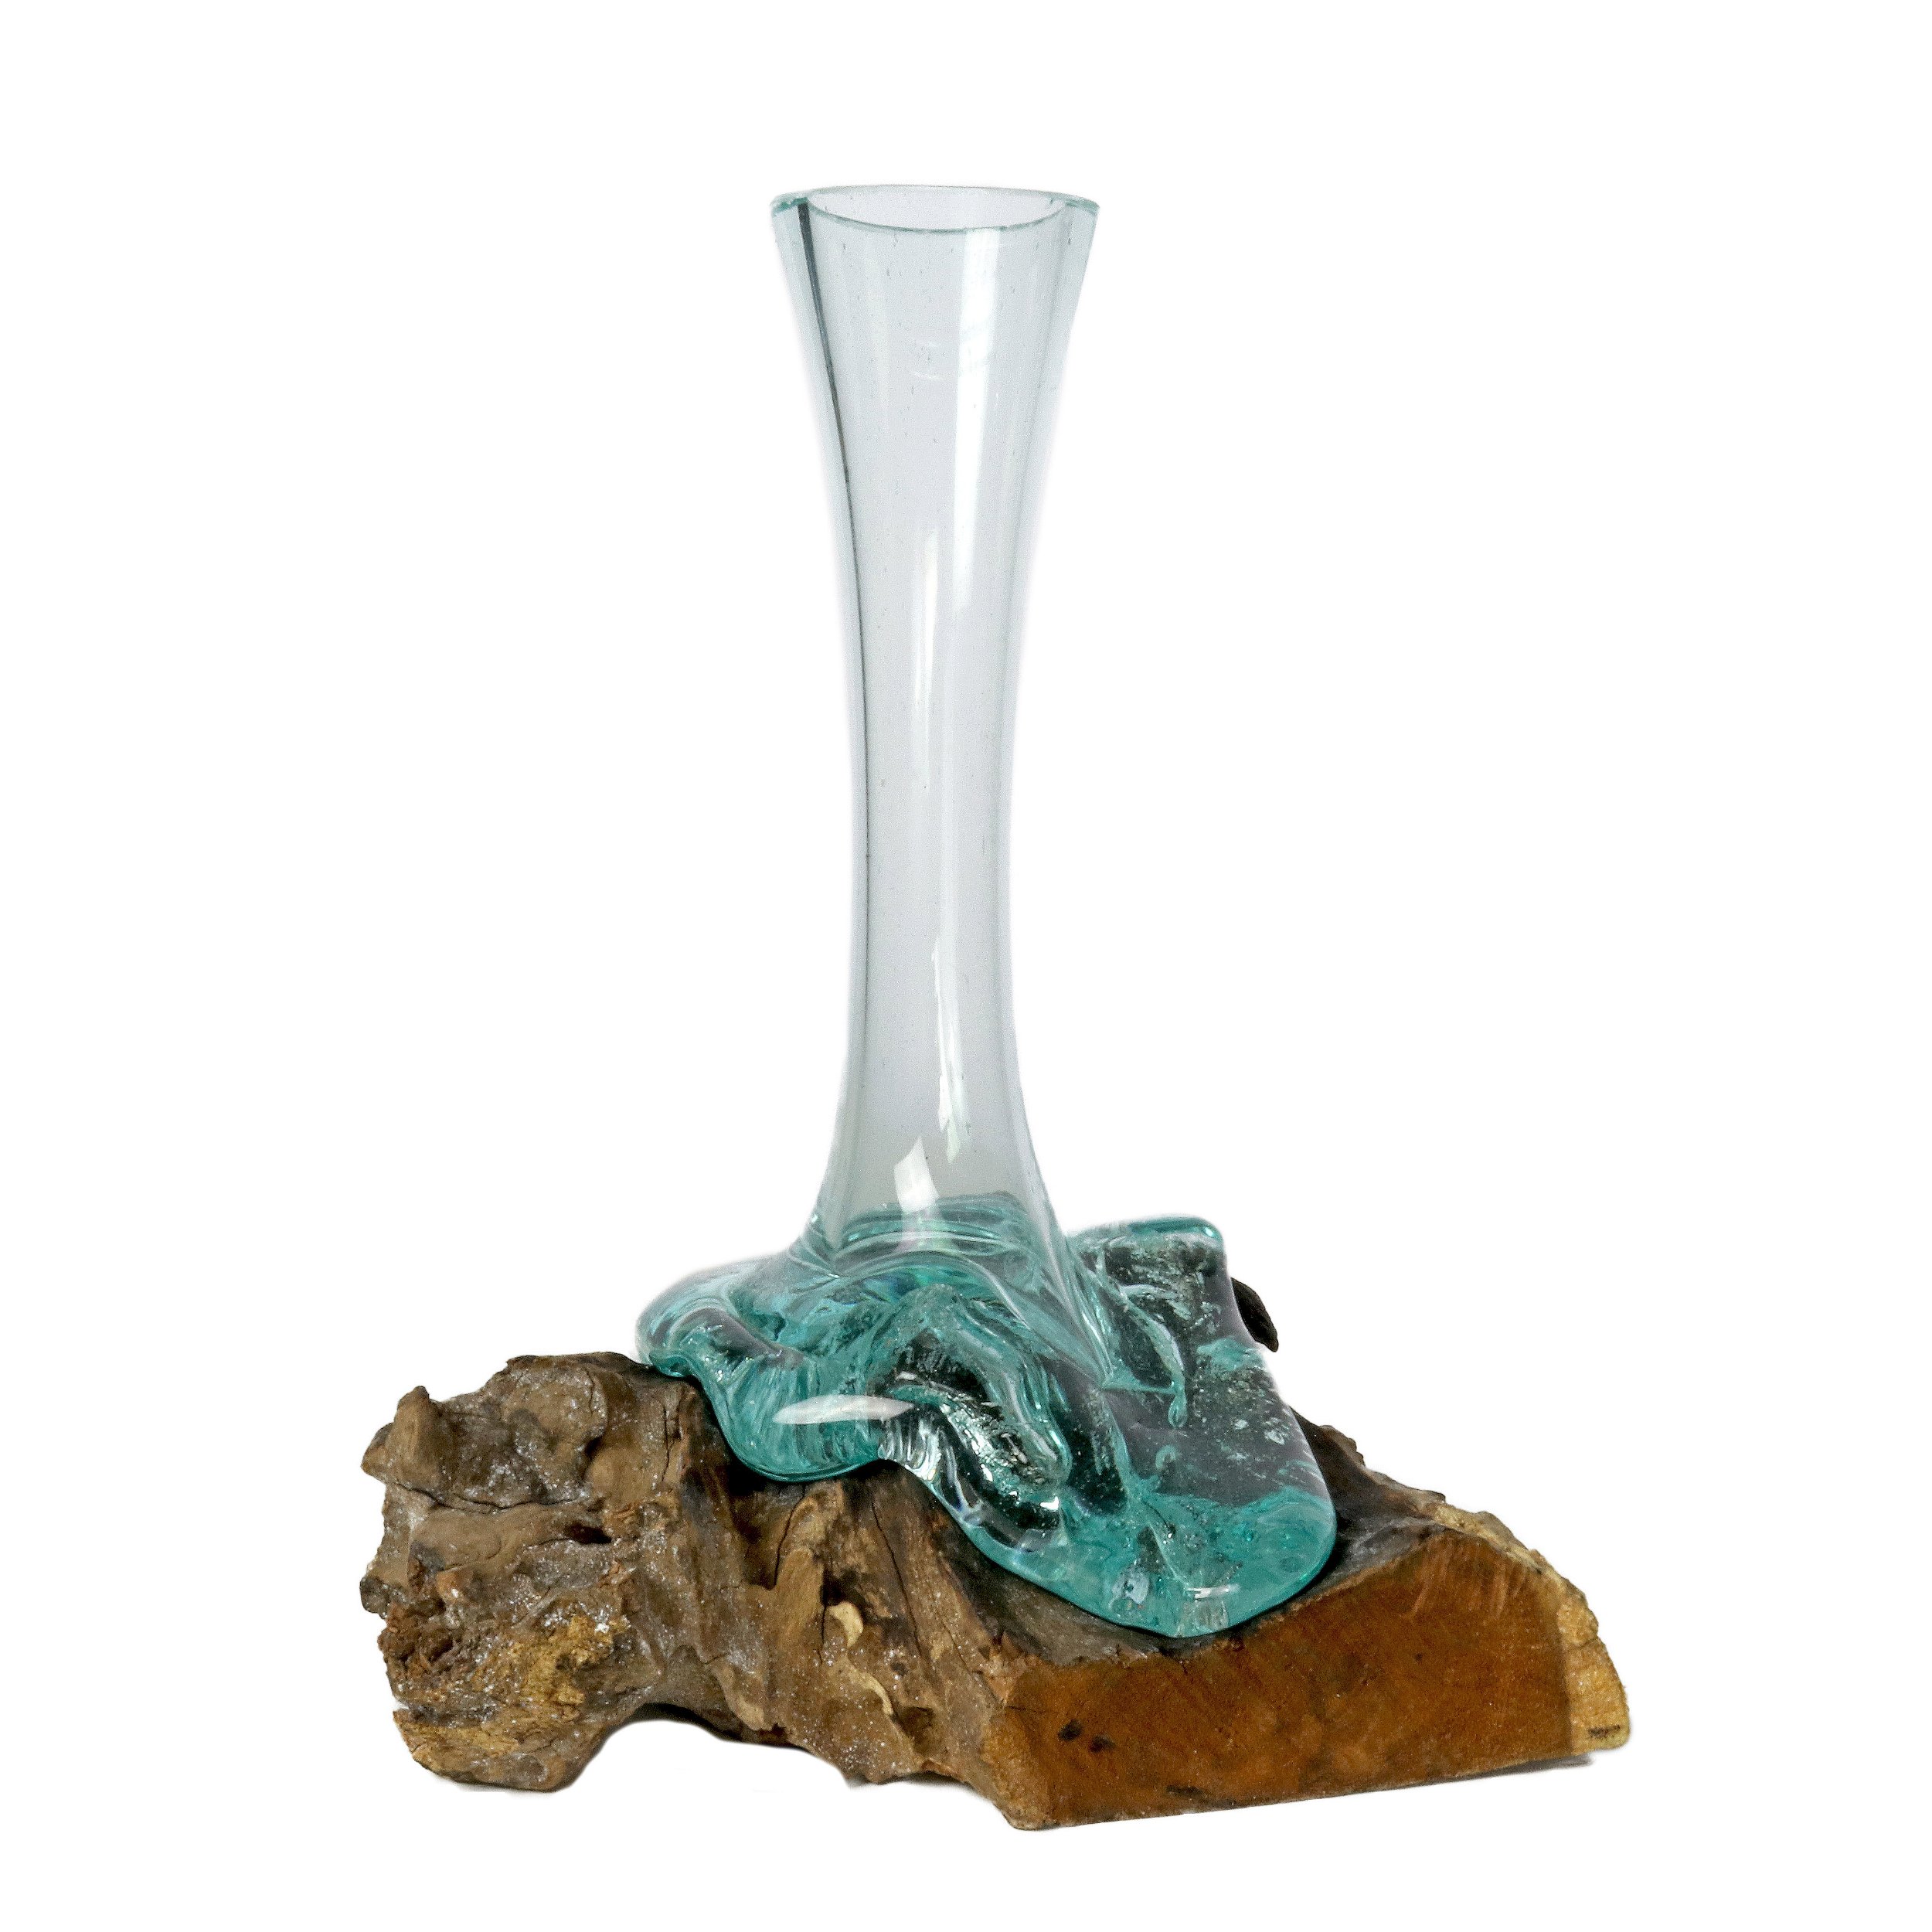 Glass Vase Melted Over Wood Log -Elongated